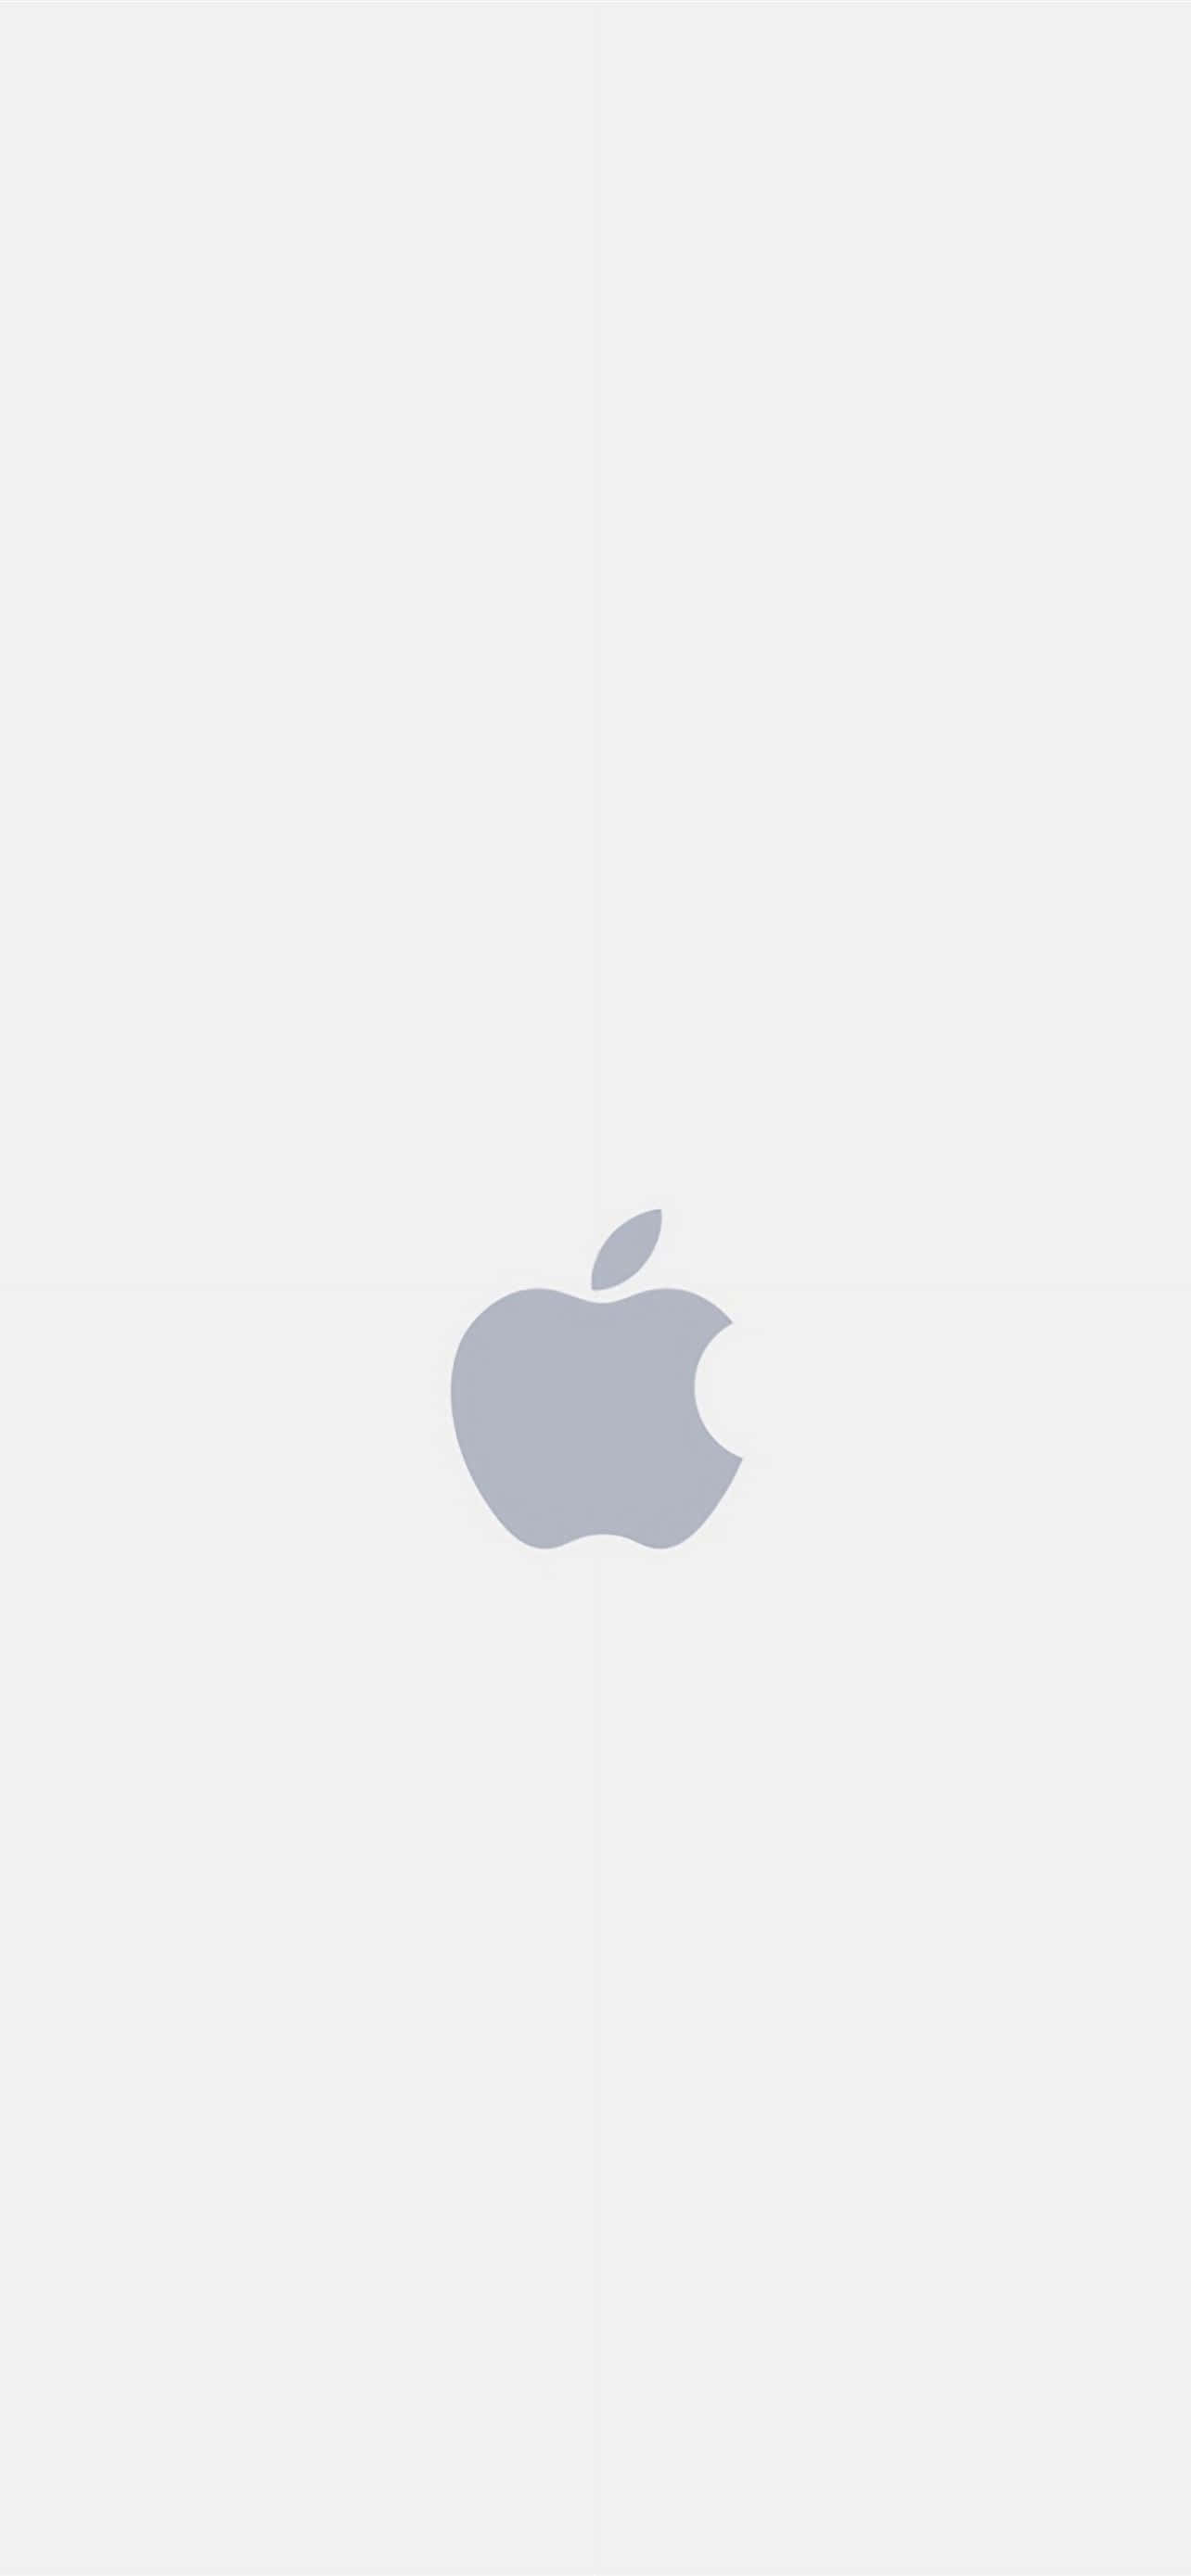 Logoda Apple Como Plano De Fundo Em 1284 X 2778.